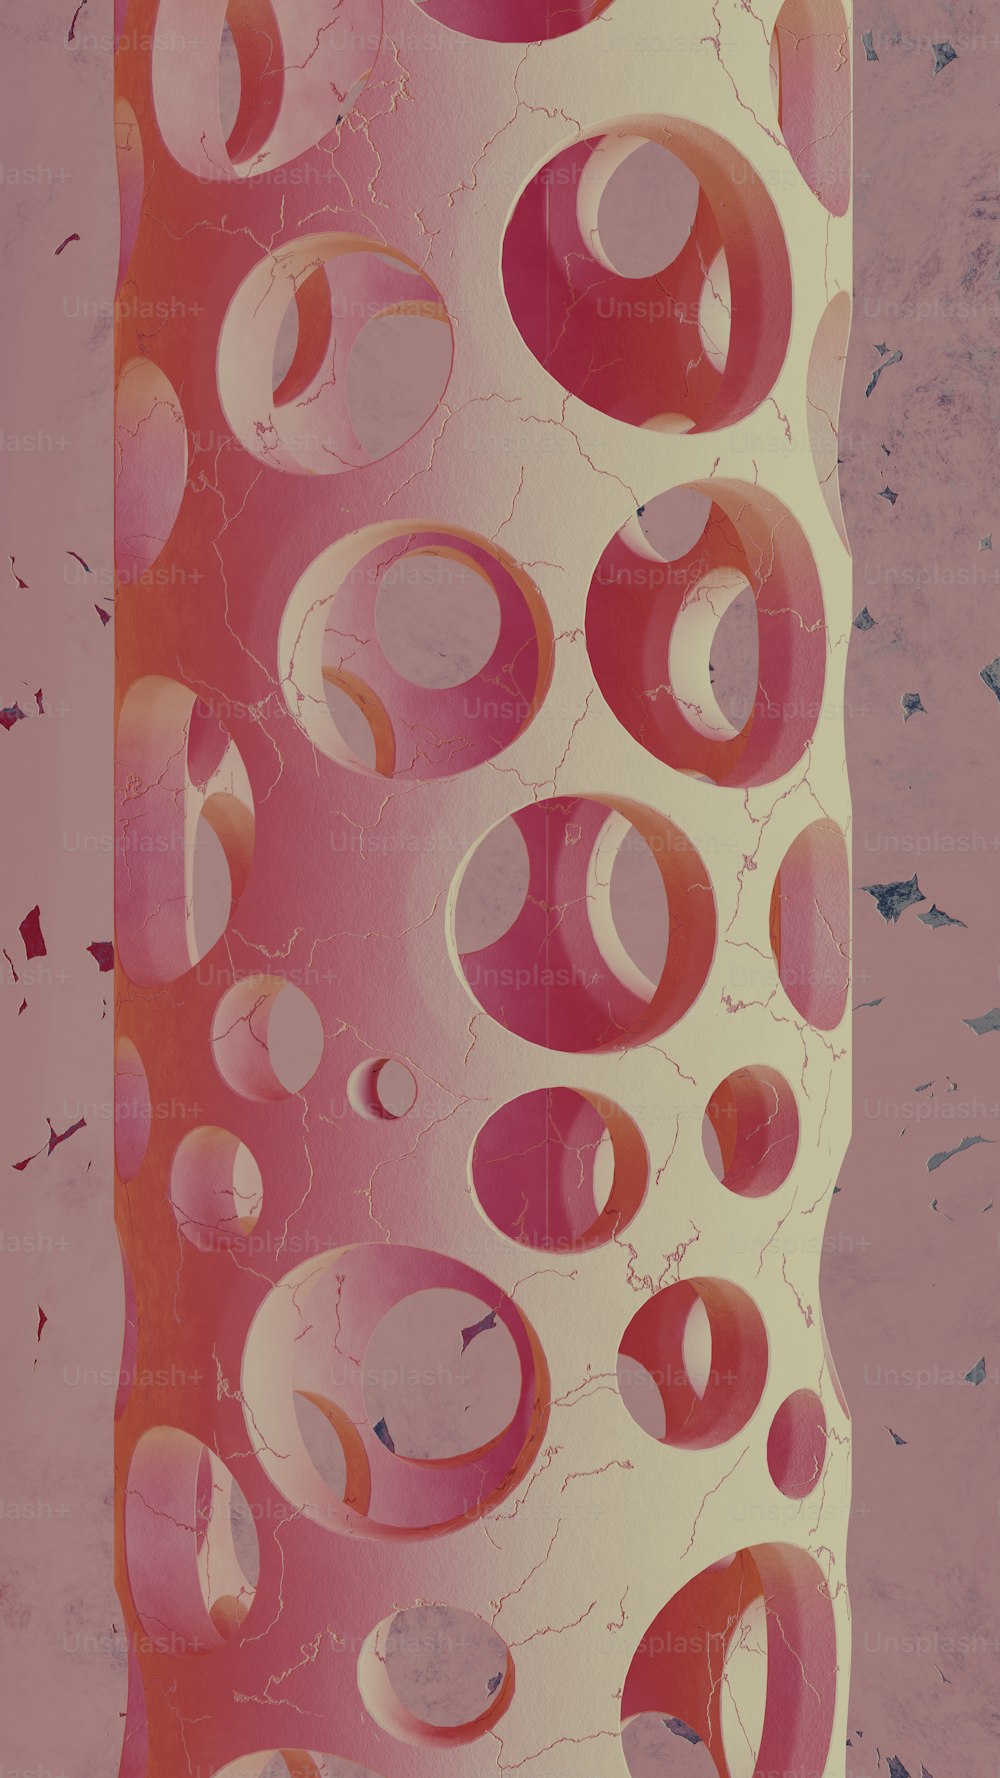 un vase rose et blanc avec des cercles dessus